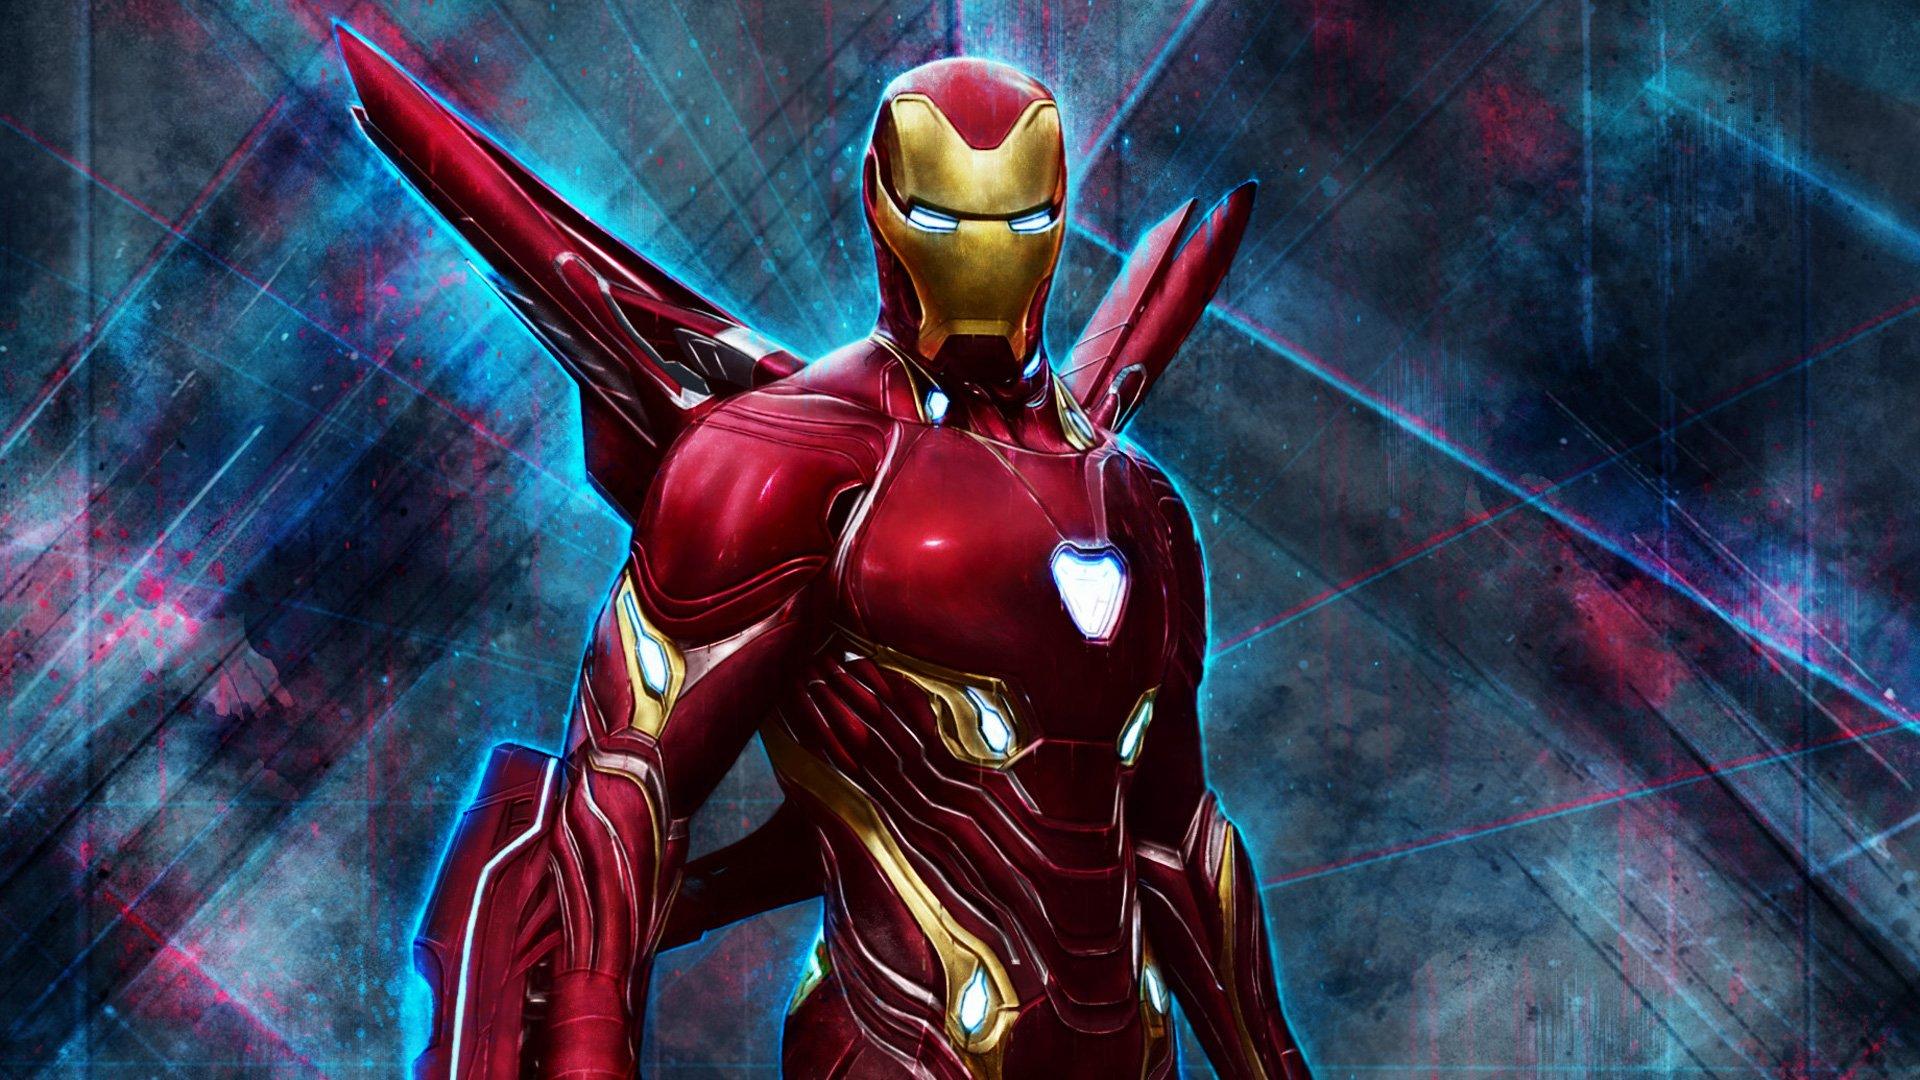 Iron Man Wallpaper Avengers Endgame